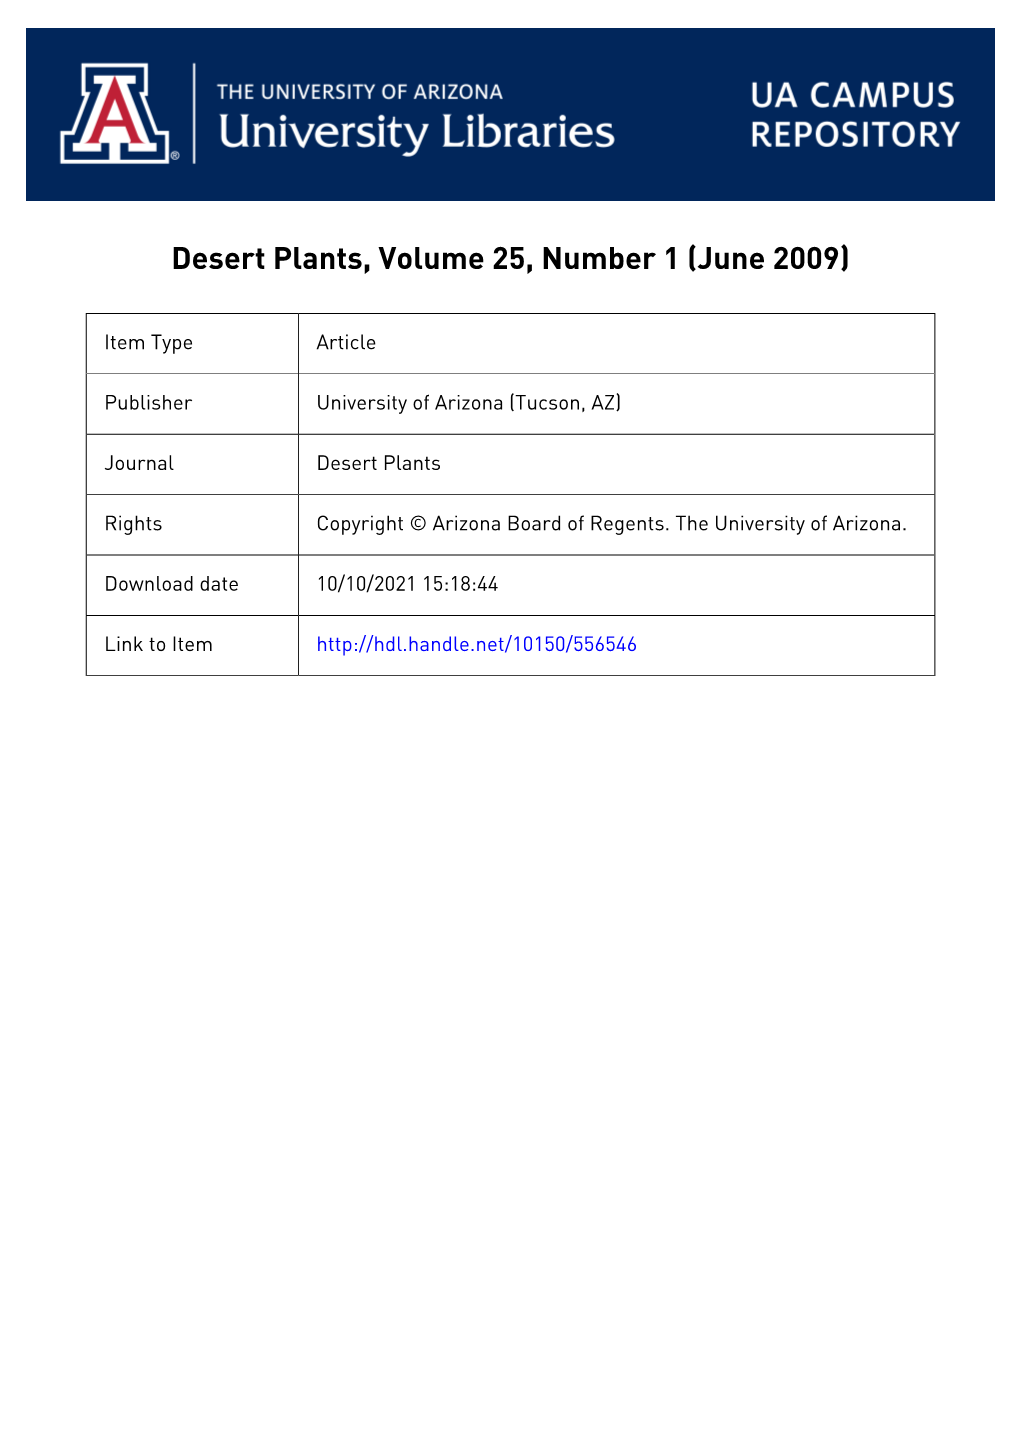 Desert Plants, Volume 25, Number 1 (June 2009)